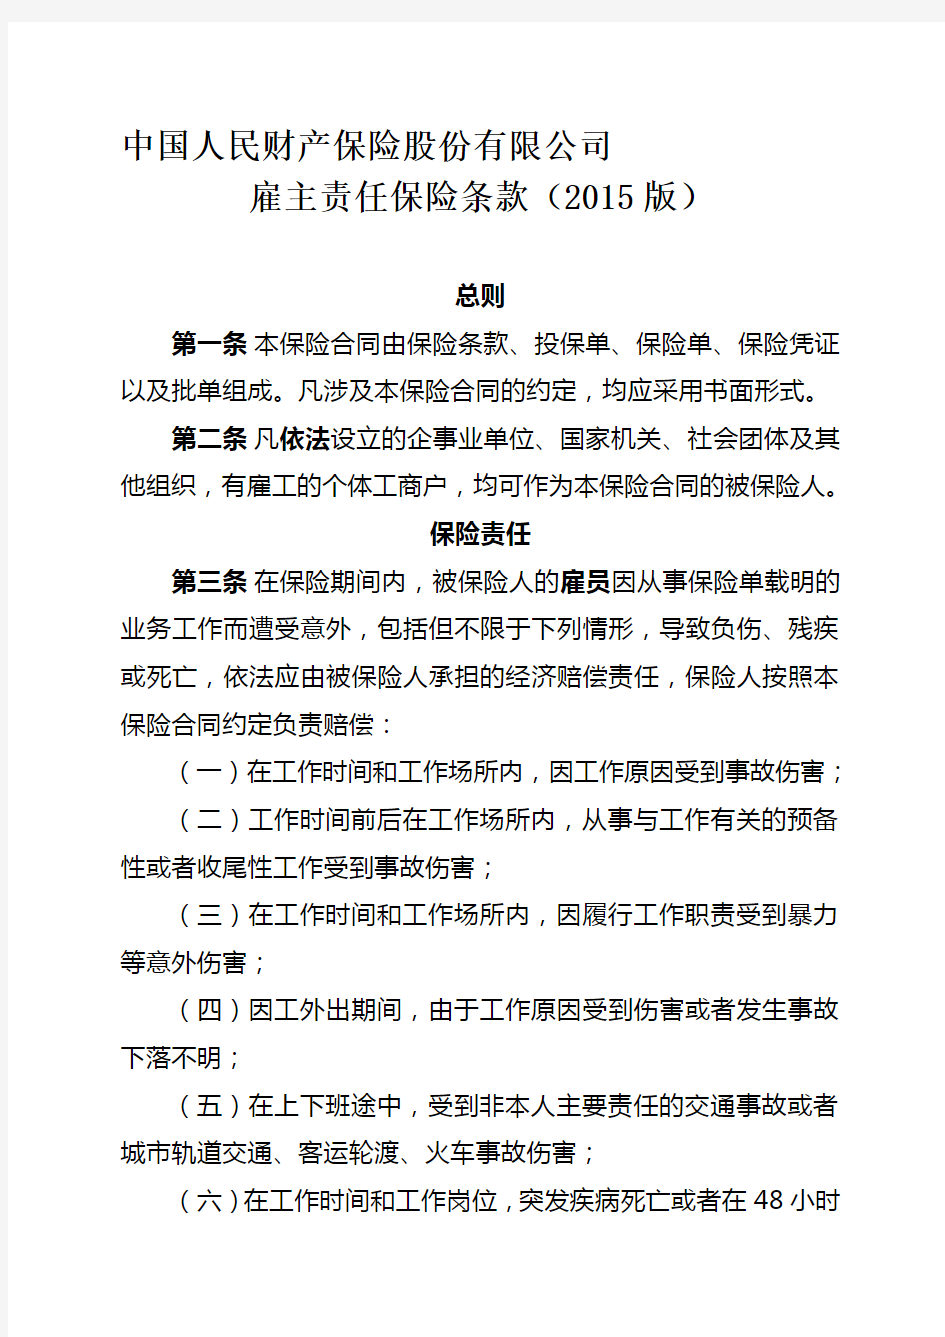 中国人民财产保险股份有限公司雇主责任保险条款(2015版)